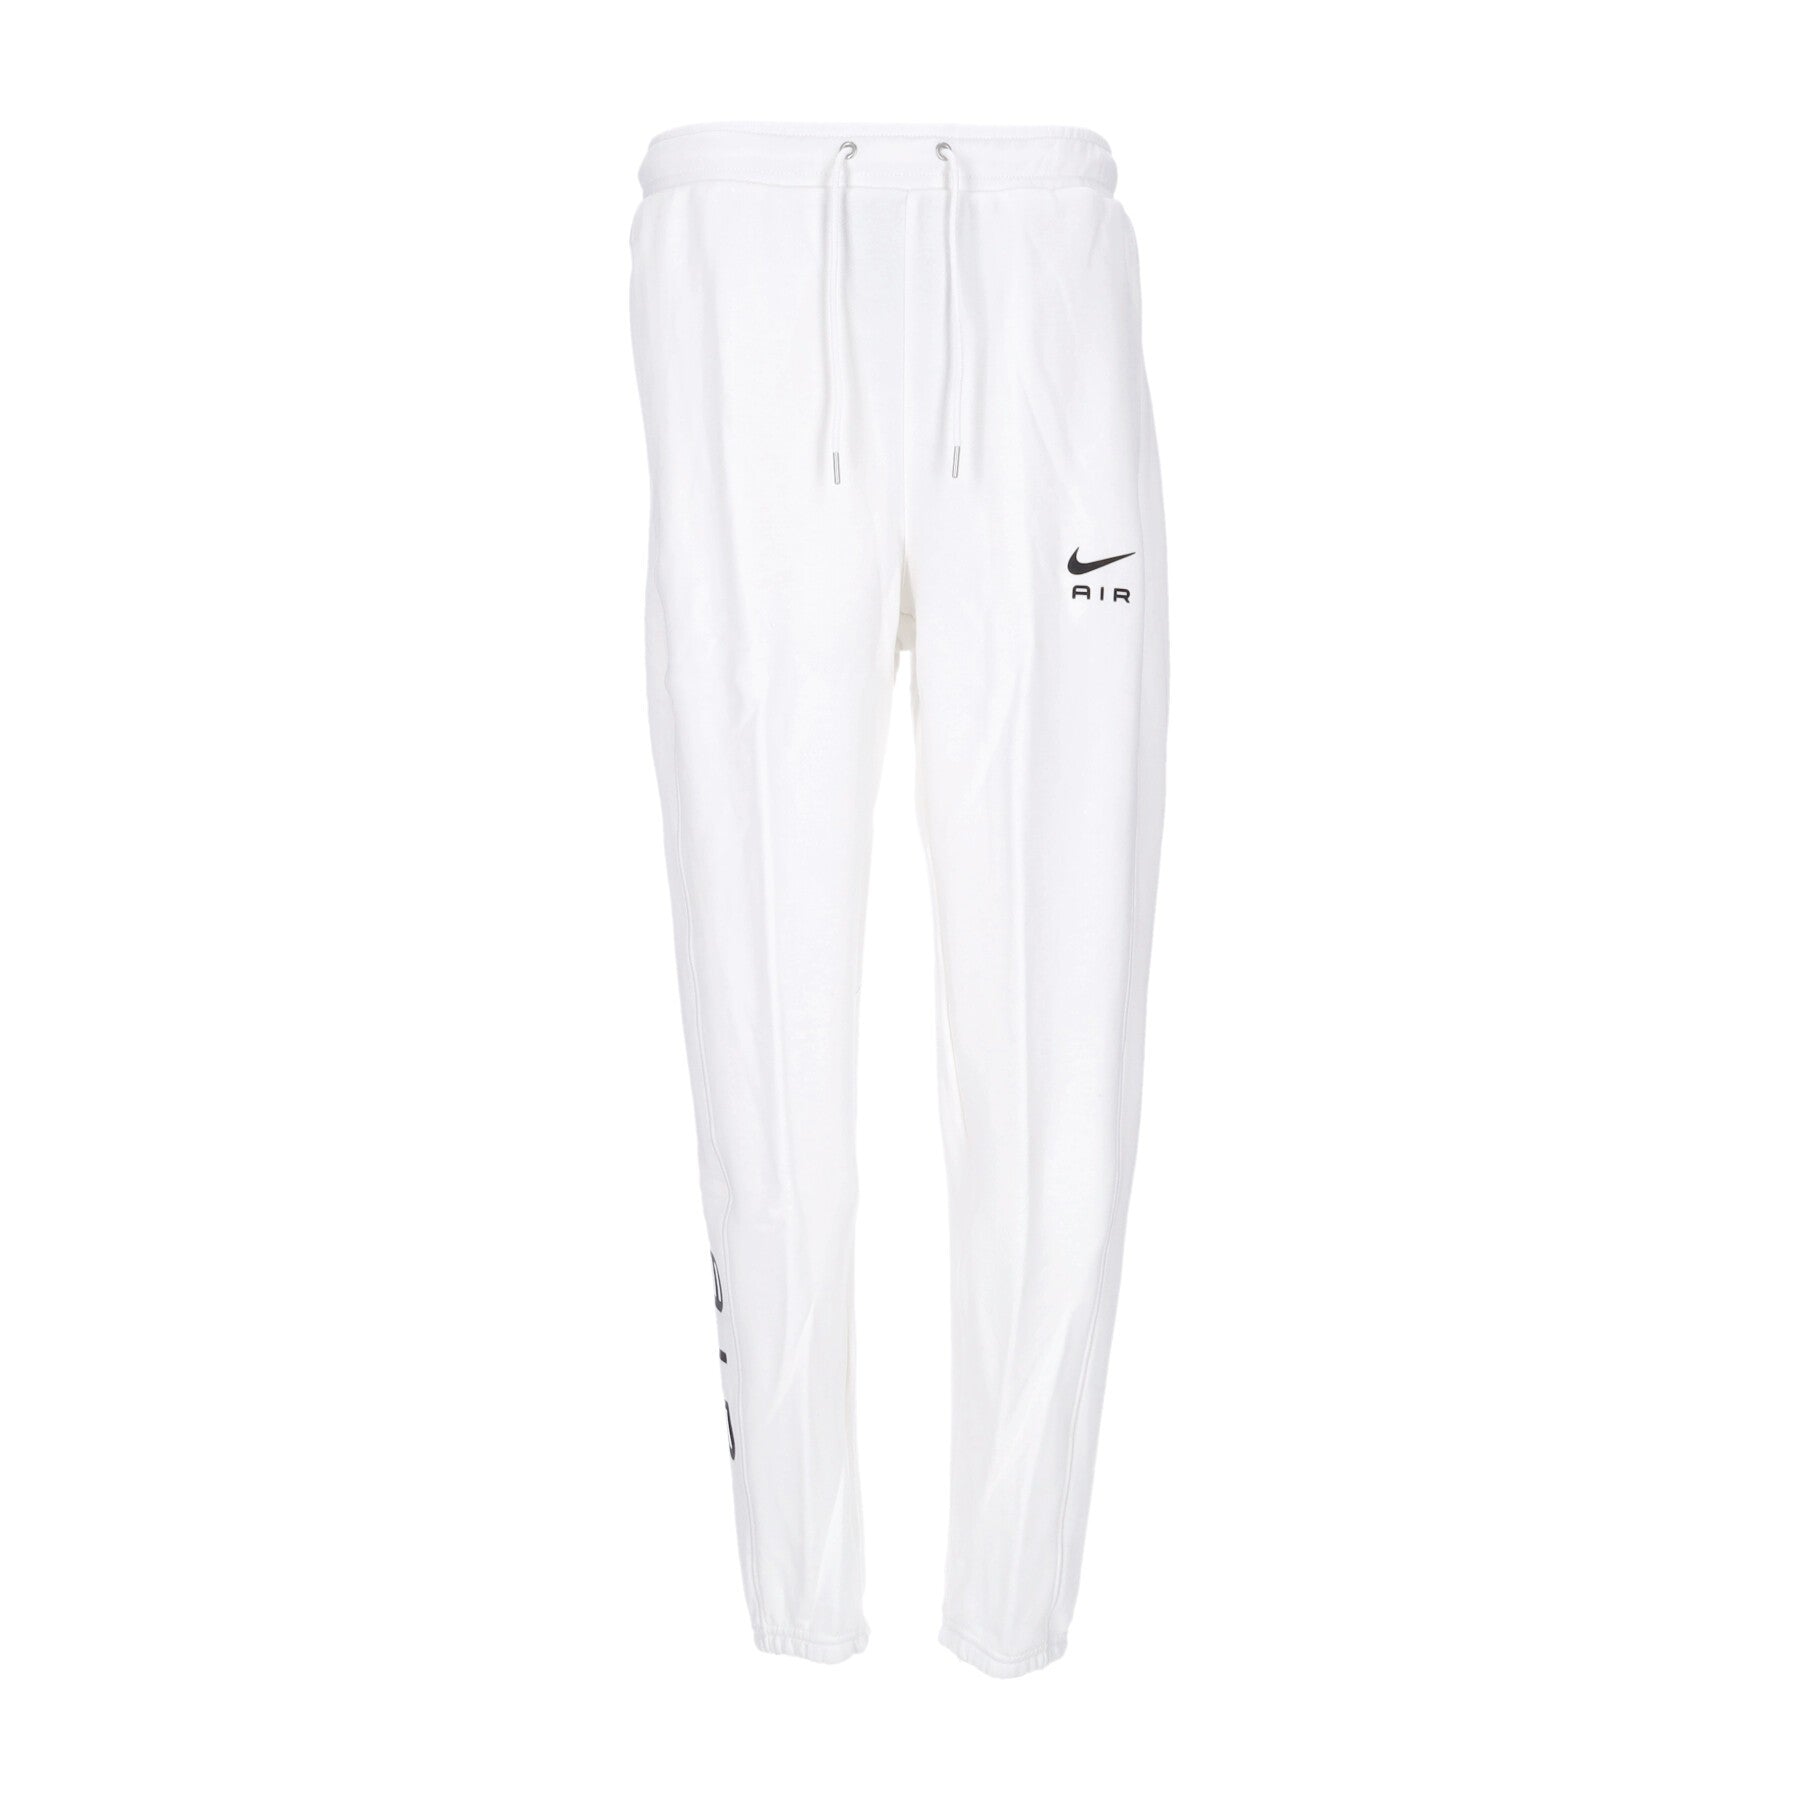 Nike, Pantalone Tuta Leggero Uomo Sportswear Air French Terry Pant, White/black